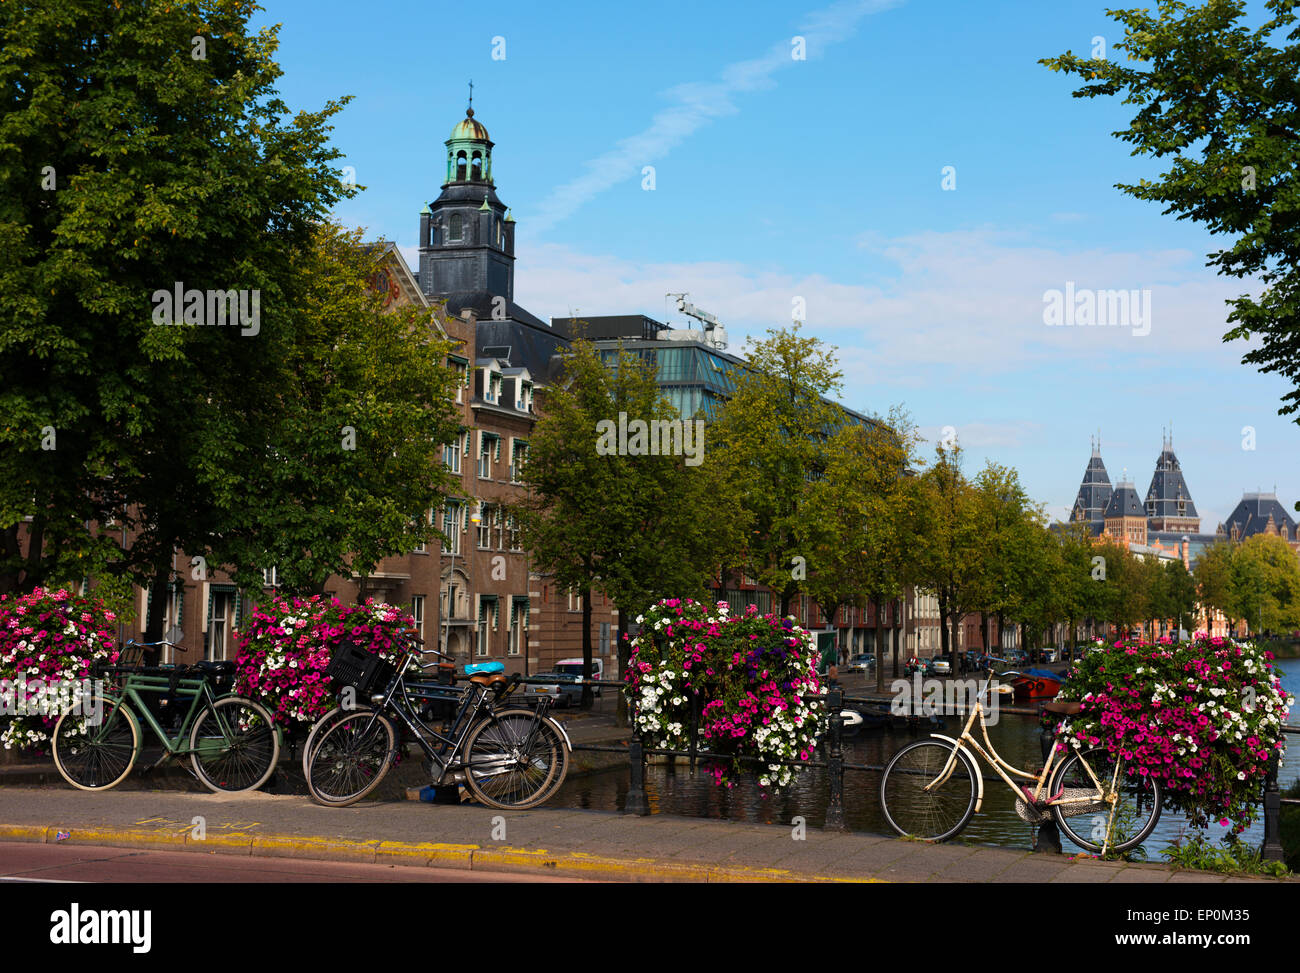 Fahrräder auf einer Brücke mit Blumen in Amsterdam. Stockfoto